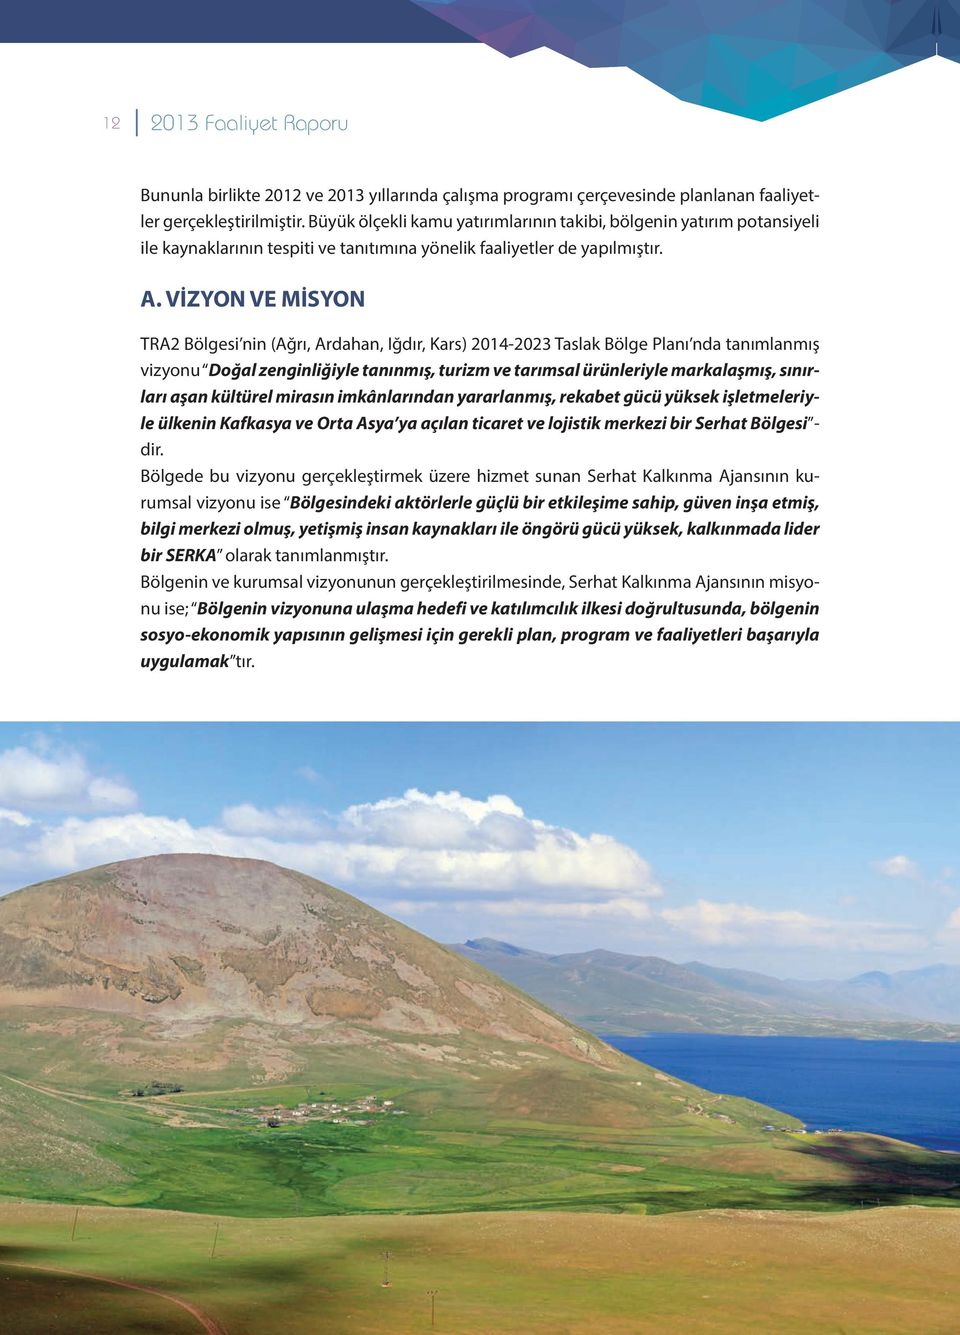 VİZYON VE MİSYON TRA2 Bölgesi nin (Ağrı, Ardahan, Iğdır, Kars) 2014-2023 Taslak Bölge Planı nda tanımlanmış vizyonu Doğal zenginliğiyle tanınmış, turizm ve tarımsal ürünleriyle markalaşmış, sınırları